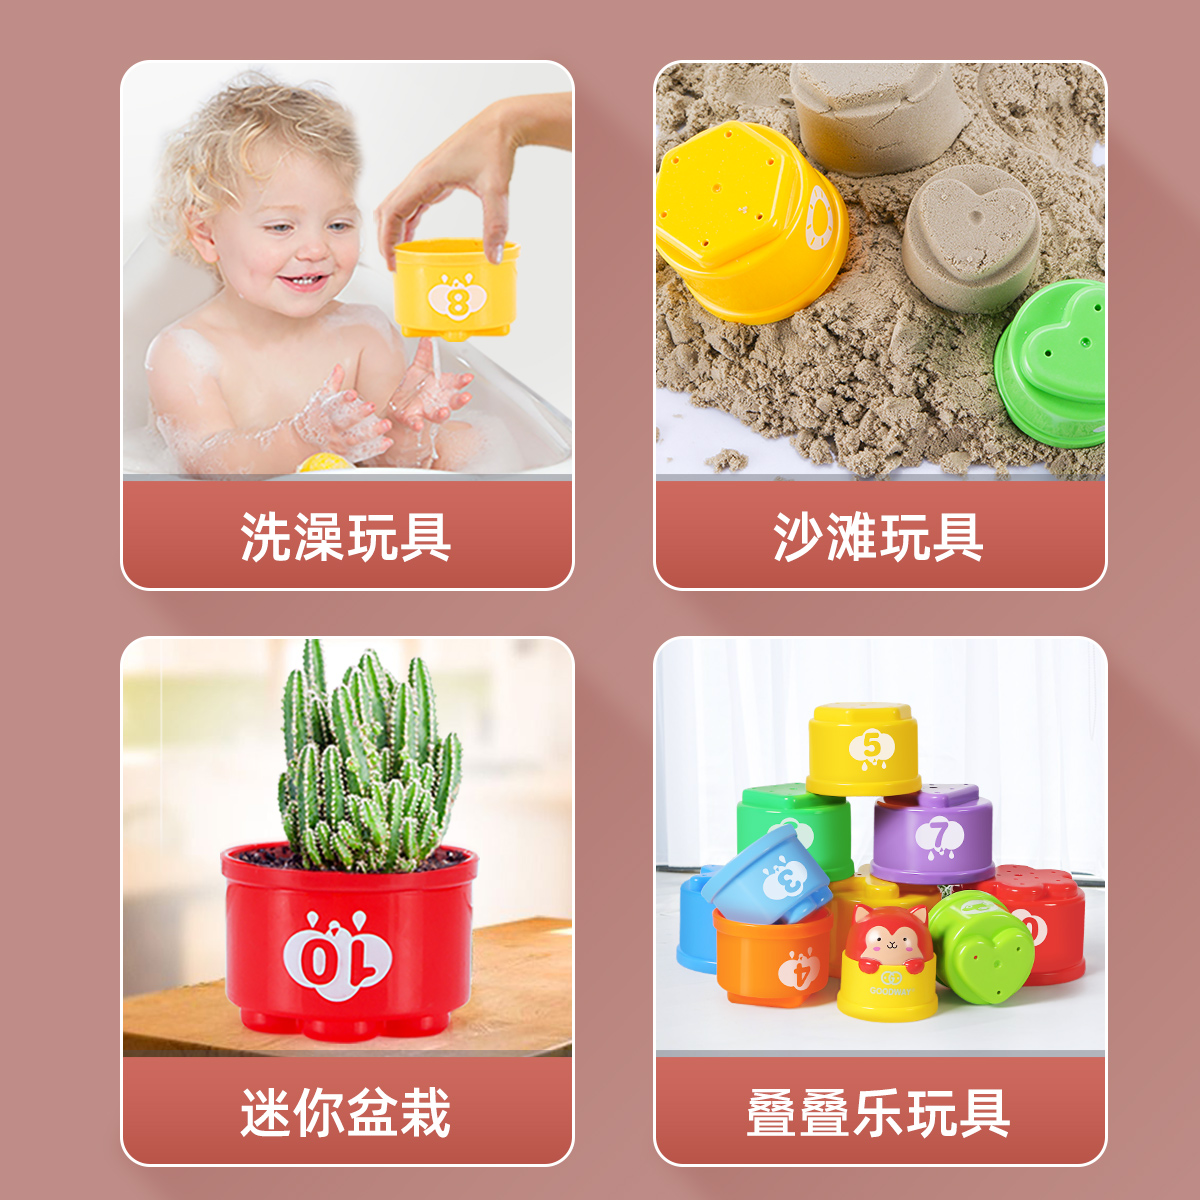 谷雨彩虹叠叠杯婴儿六一儿童节玩具6个月益智早教宝宝1-3岁套套圈